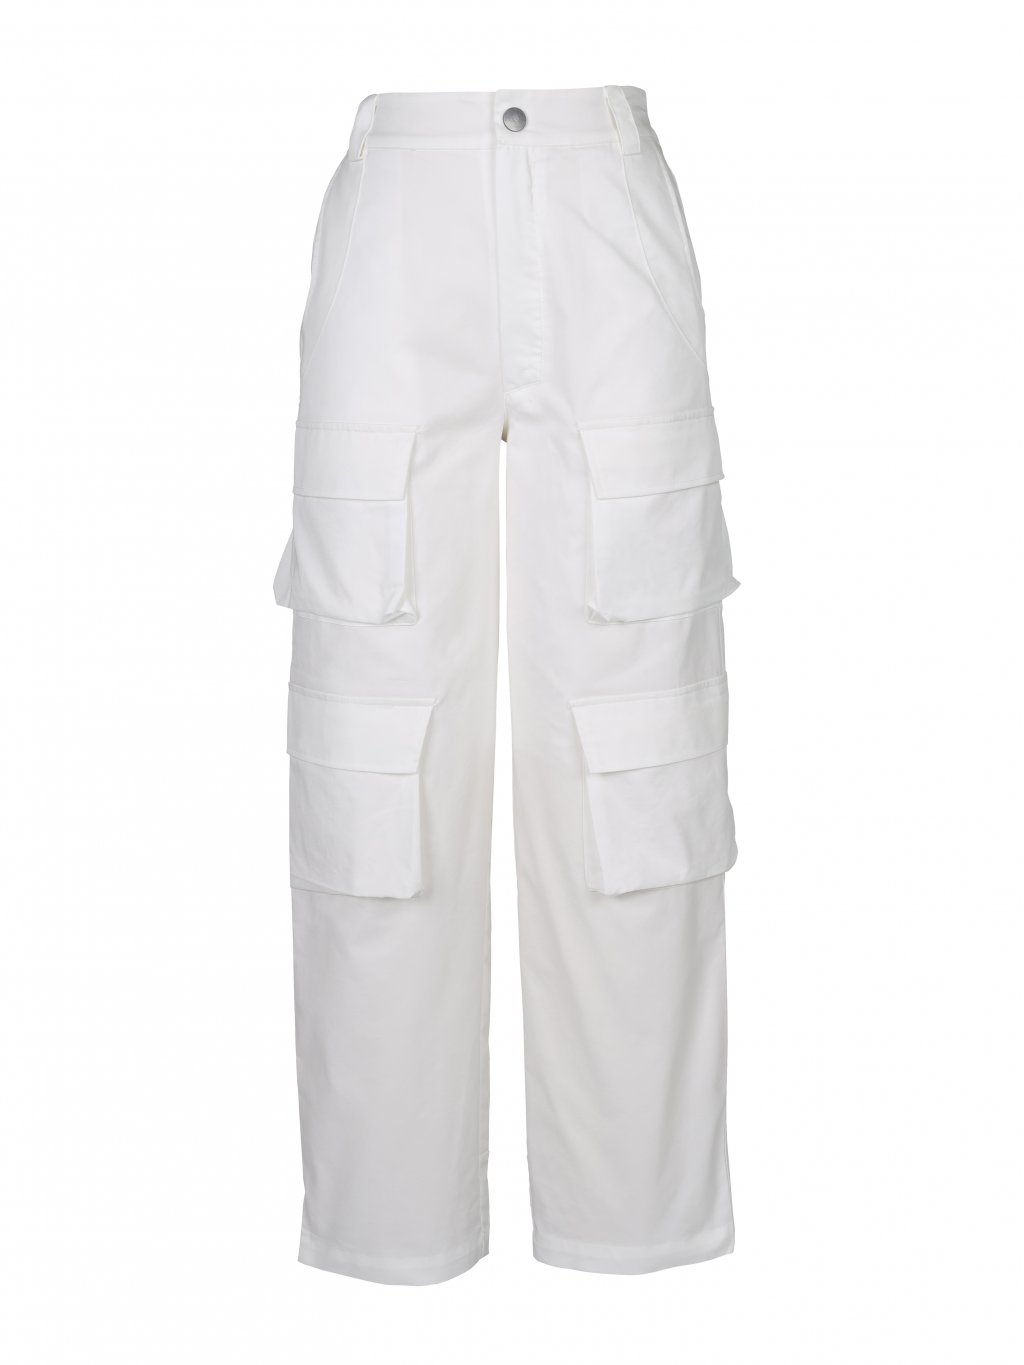 Kalhoty NU Denmark 7921-10 bílé se stylovými kapsami 